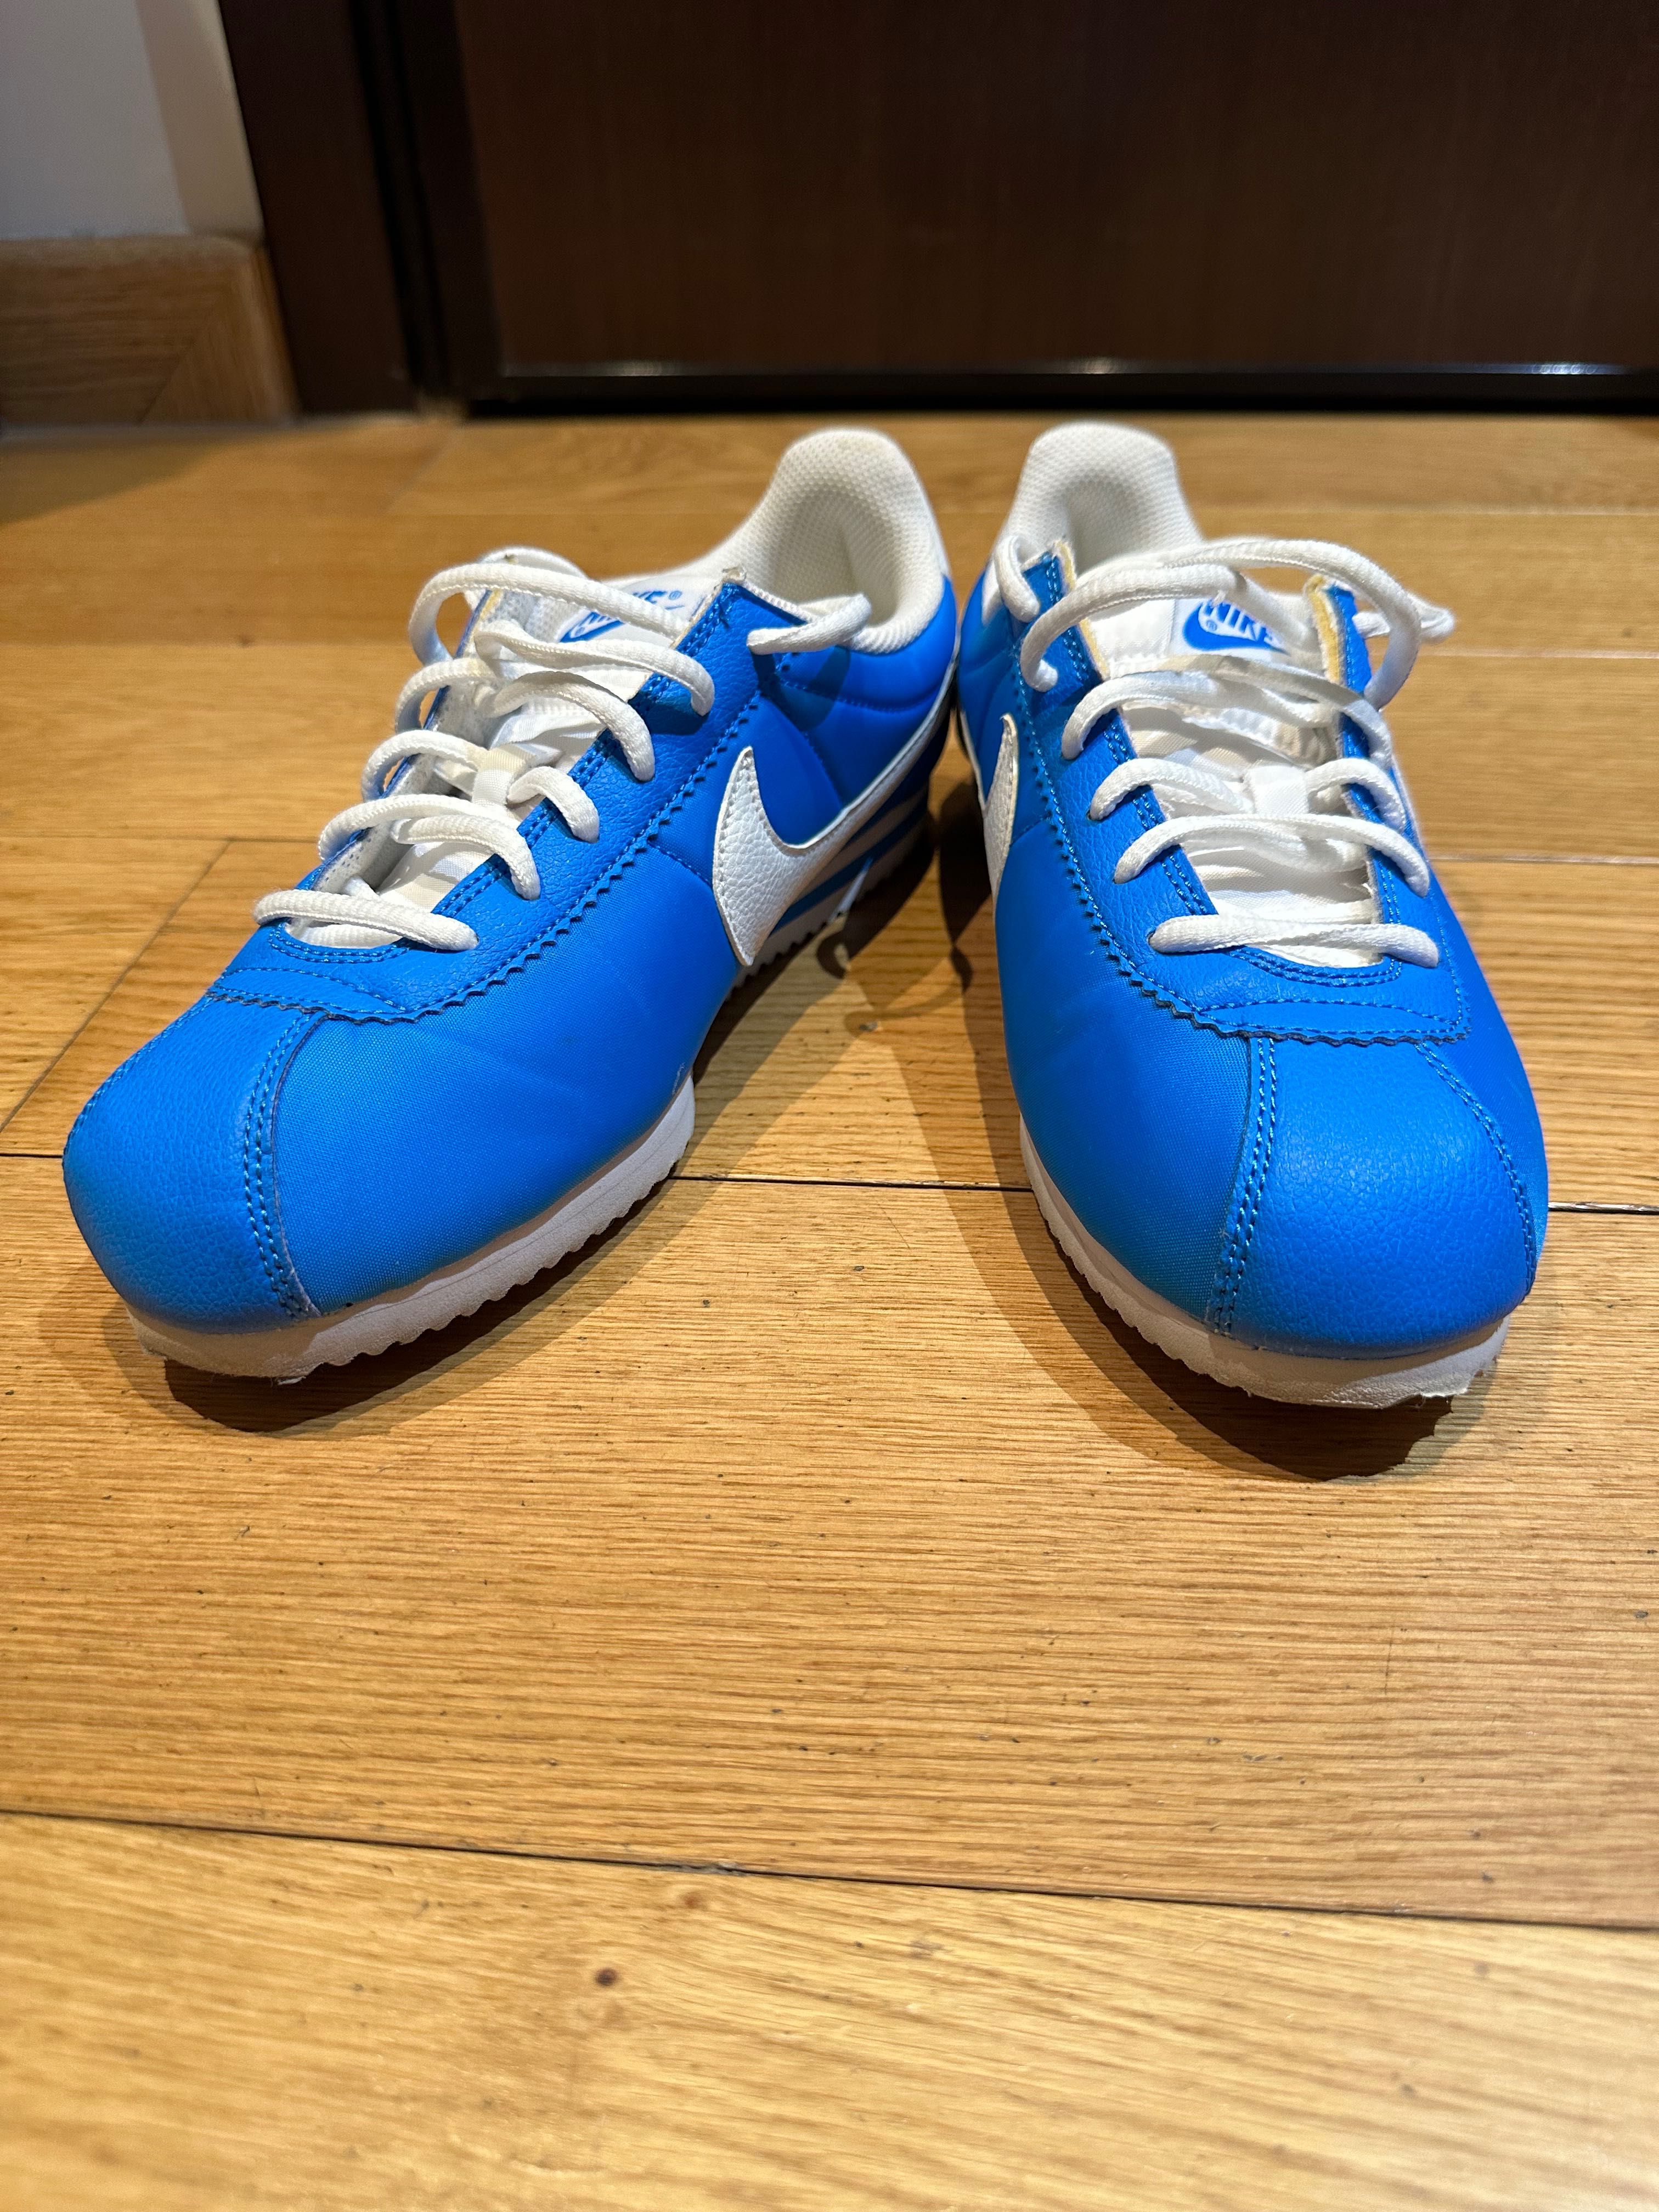 Nike Cortez albastri, marime 39 (recomand pt 38/38.5)